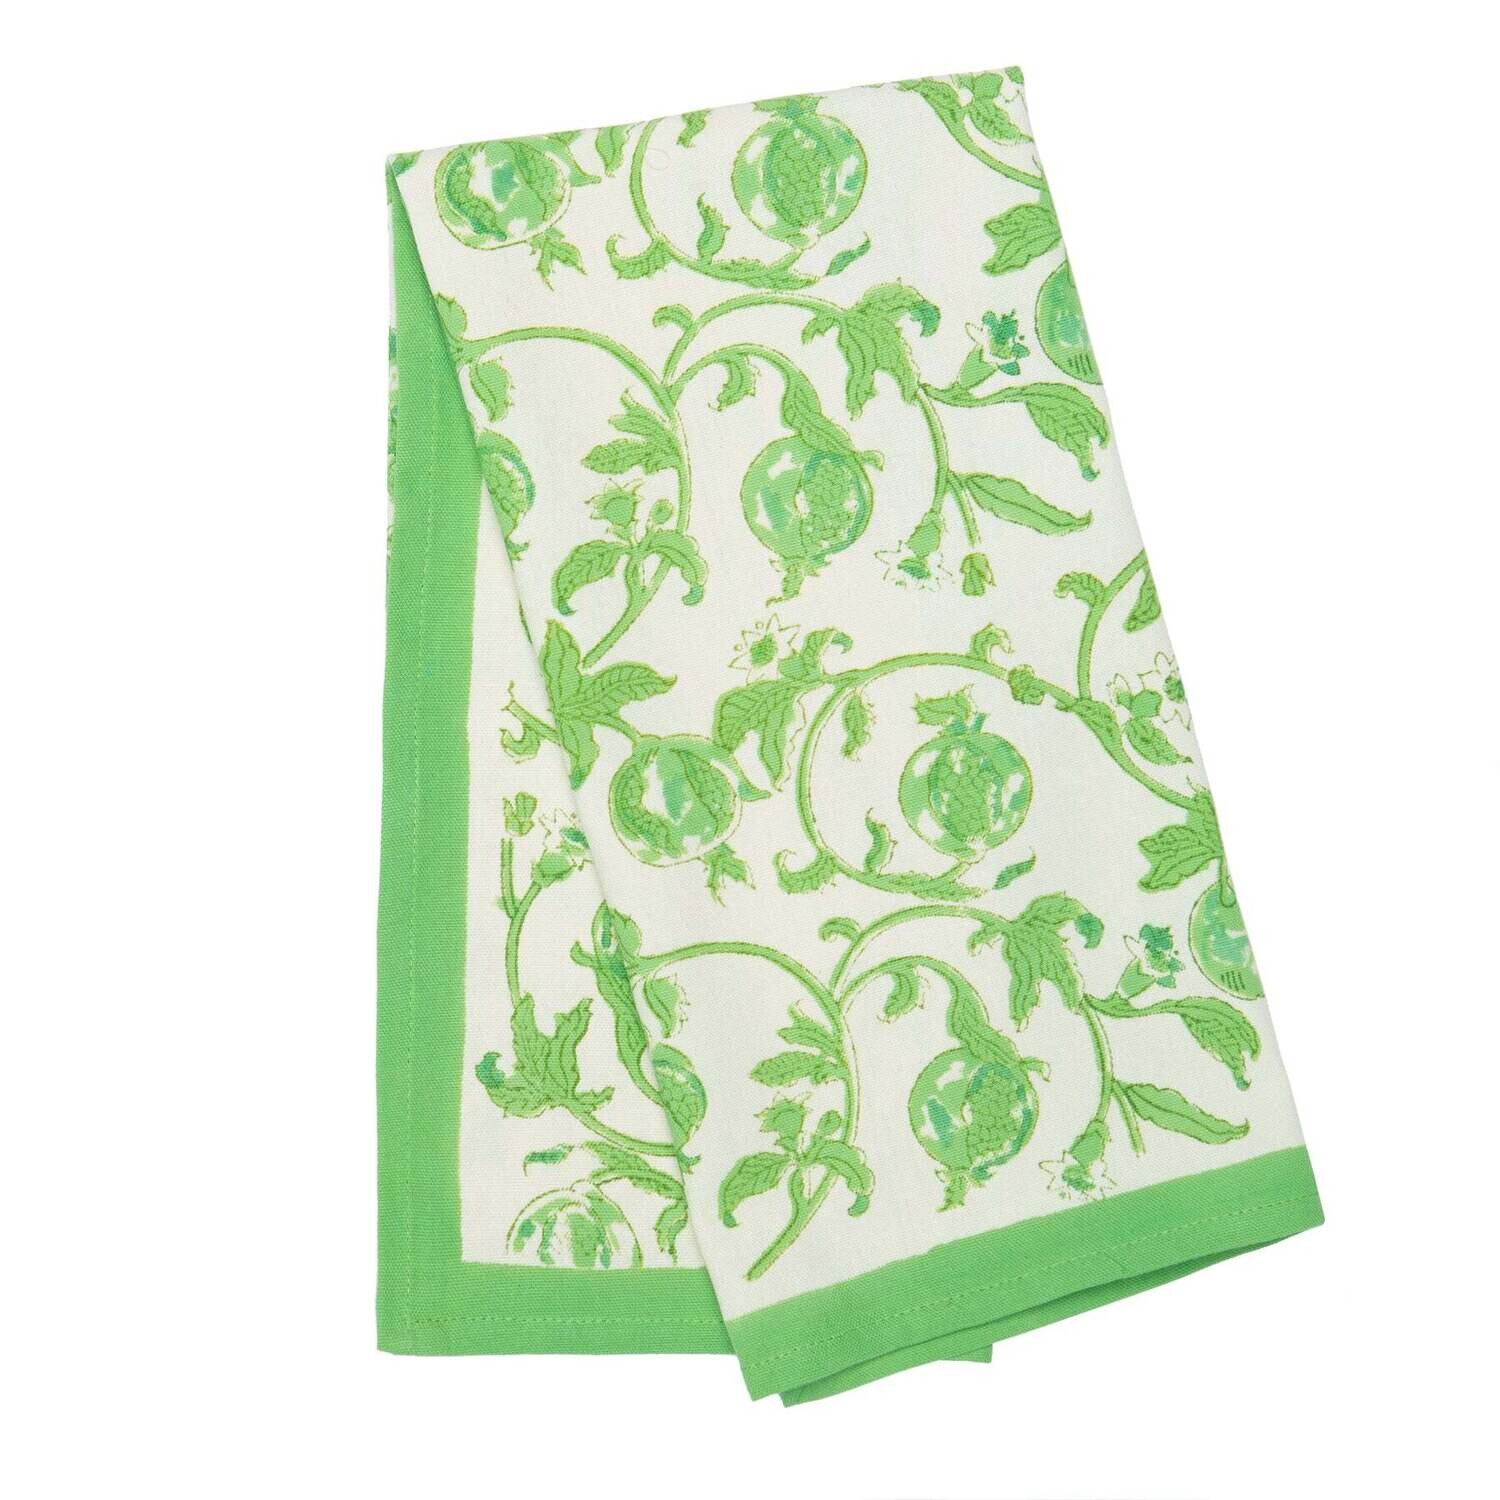 COULEUR NATURE Granada Parrot Green Tea Towels 